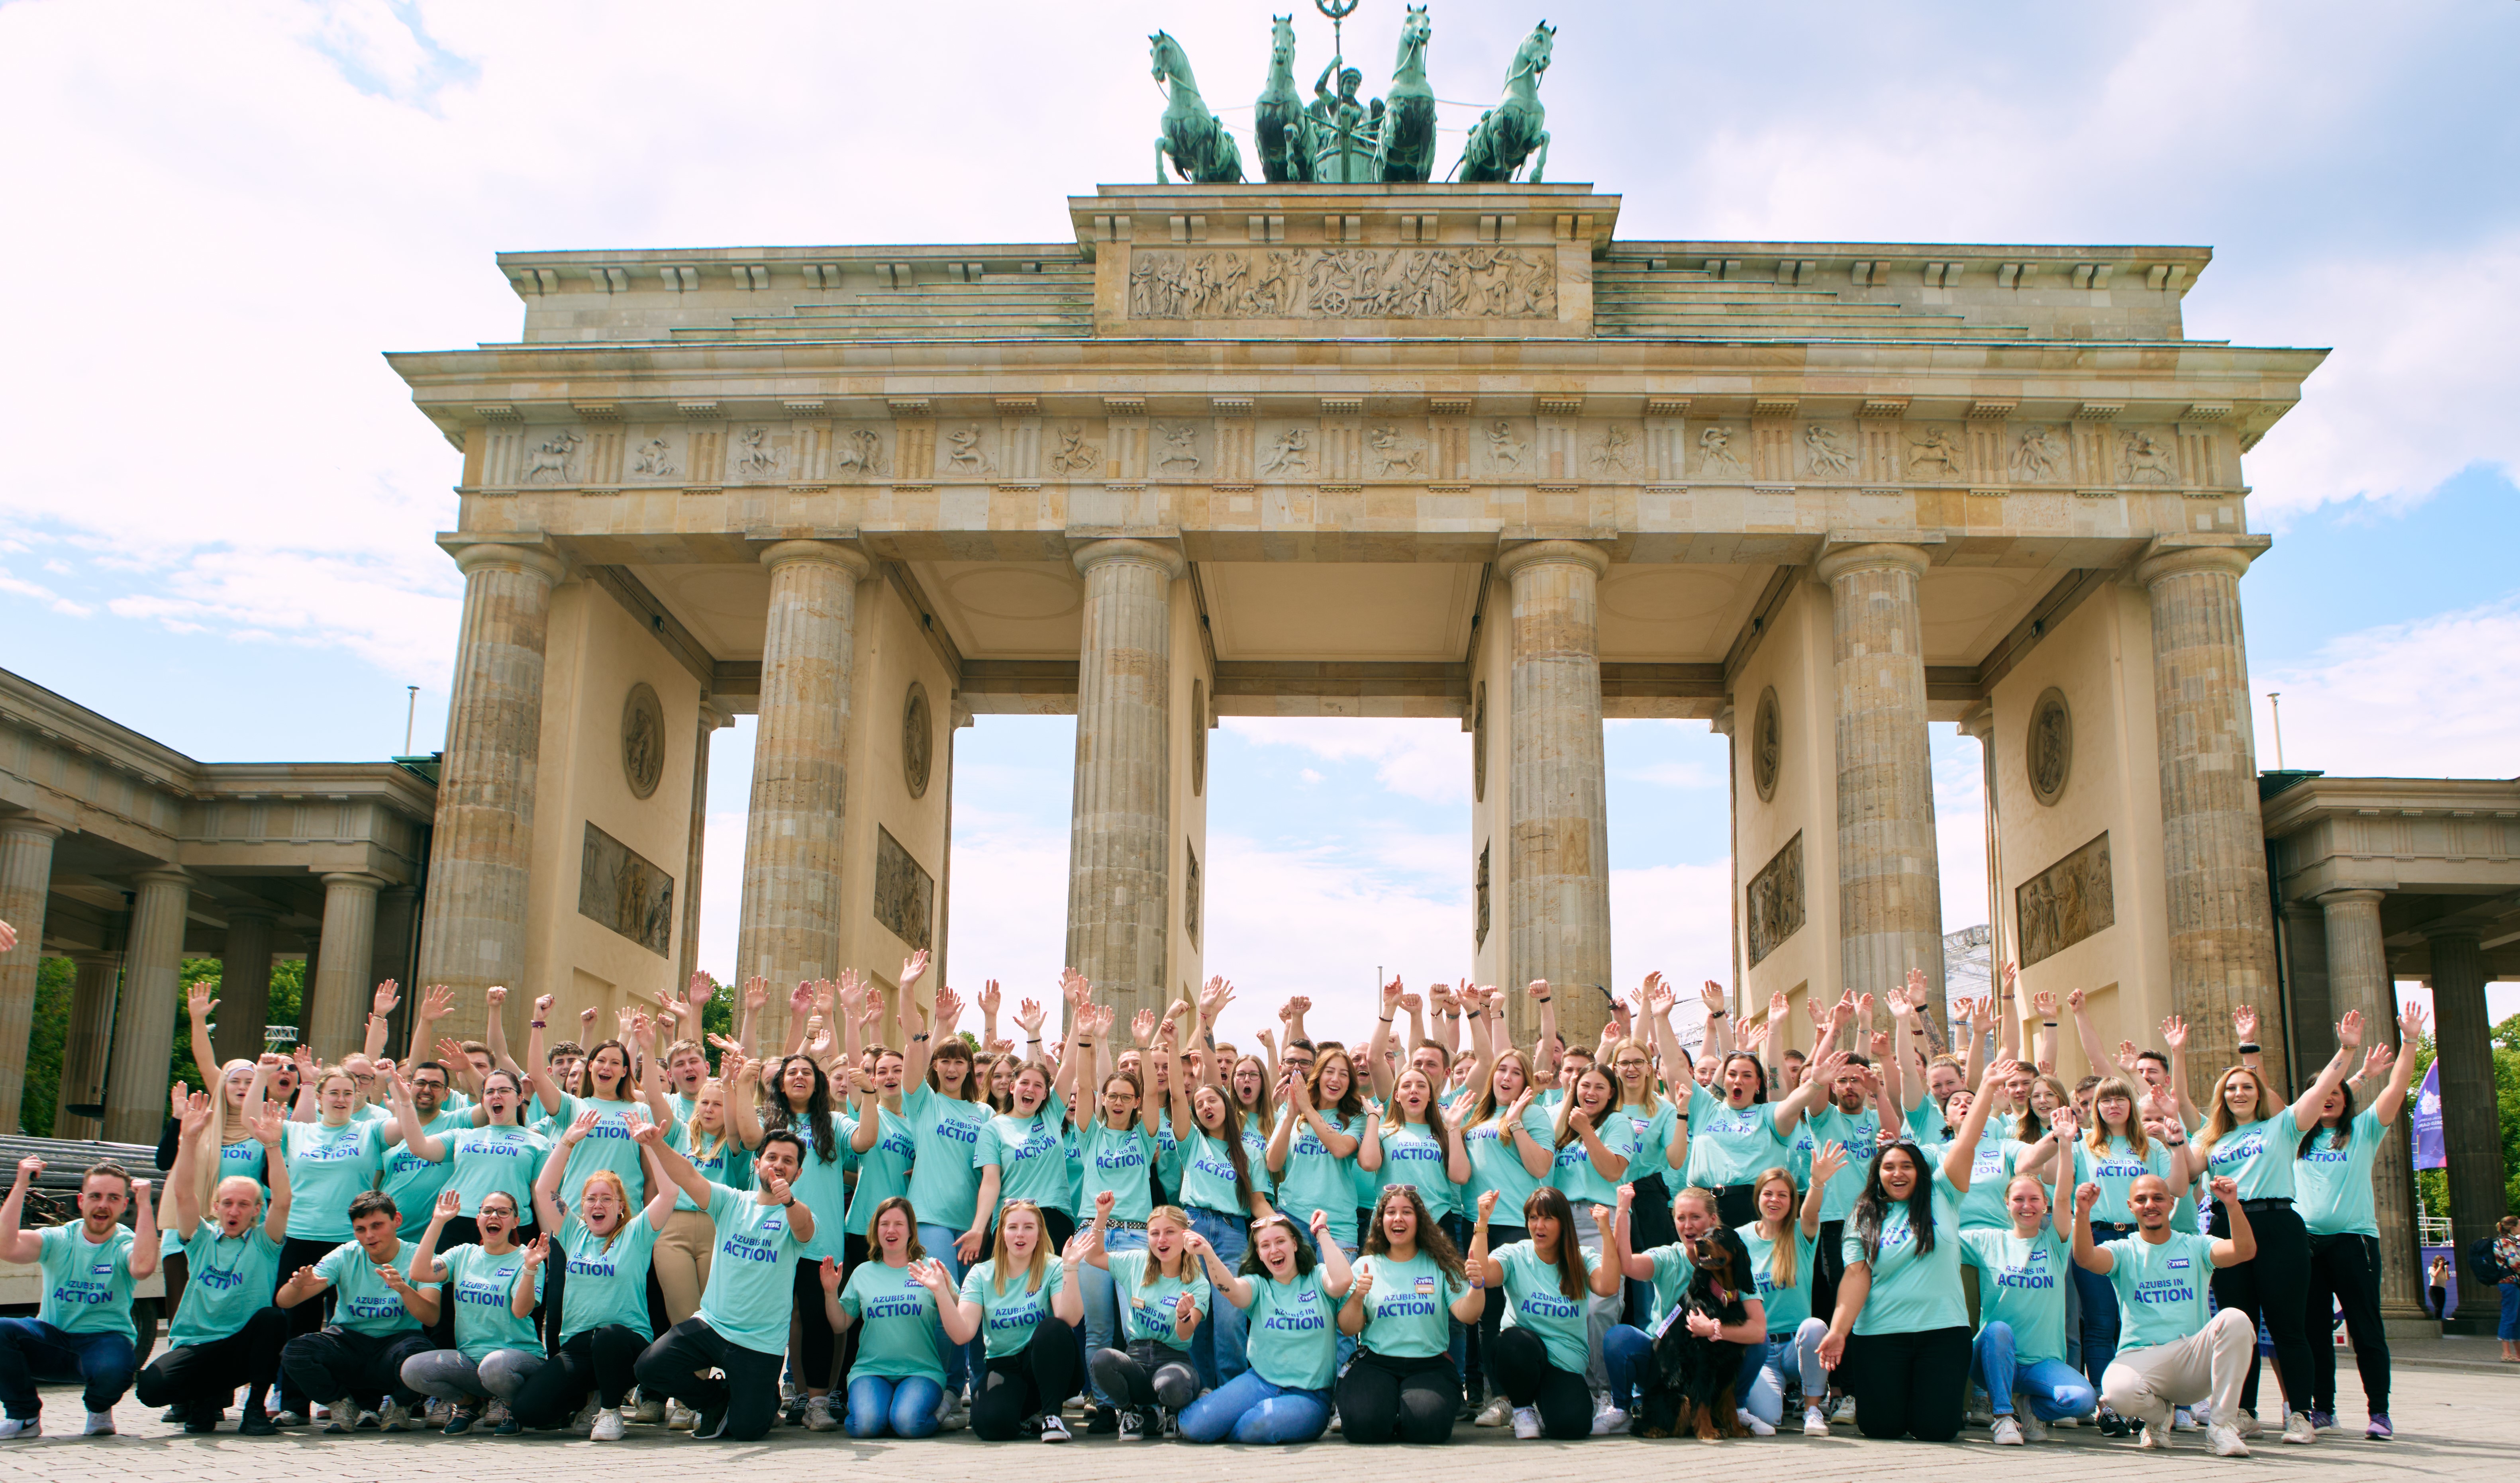 Mehr als 100 junge Menschen stehen vorm Brandenburger Tor – ein Tor, das auf sechs Säulen steht und sich mitten in Berlin befindet. Die Menschen haben die Arme hochgerissen und jubeln.